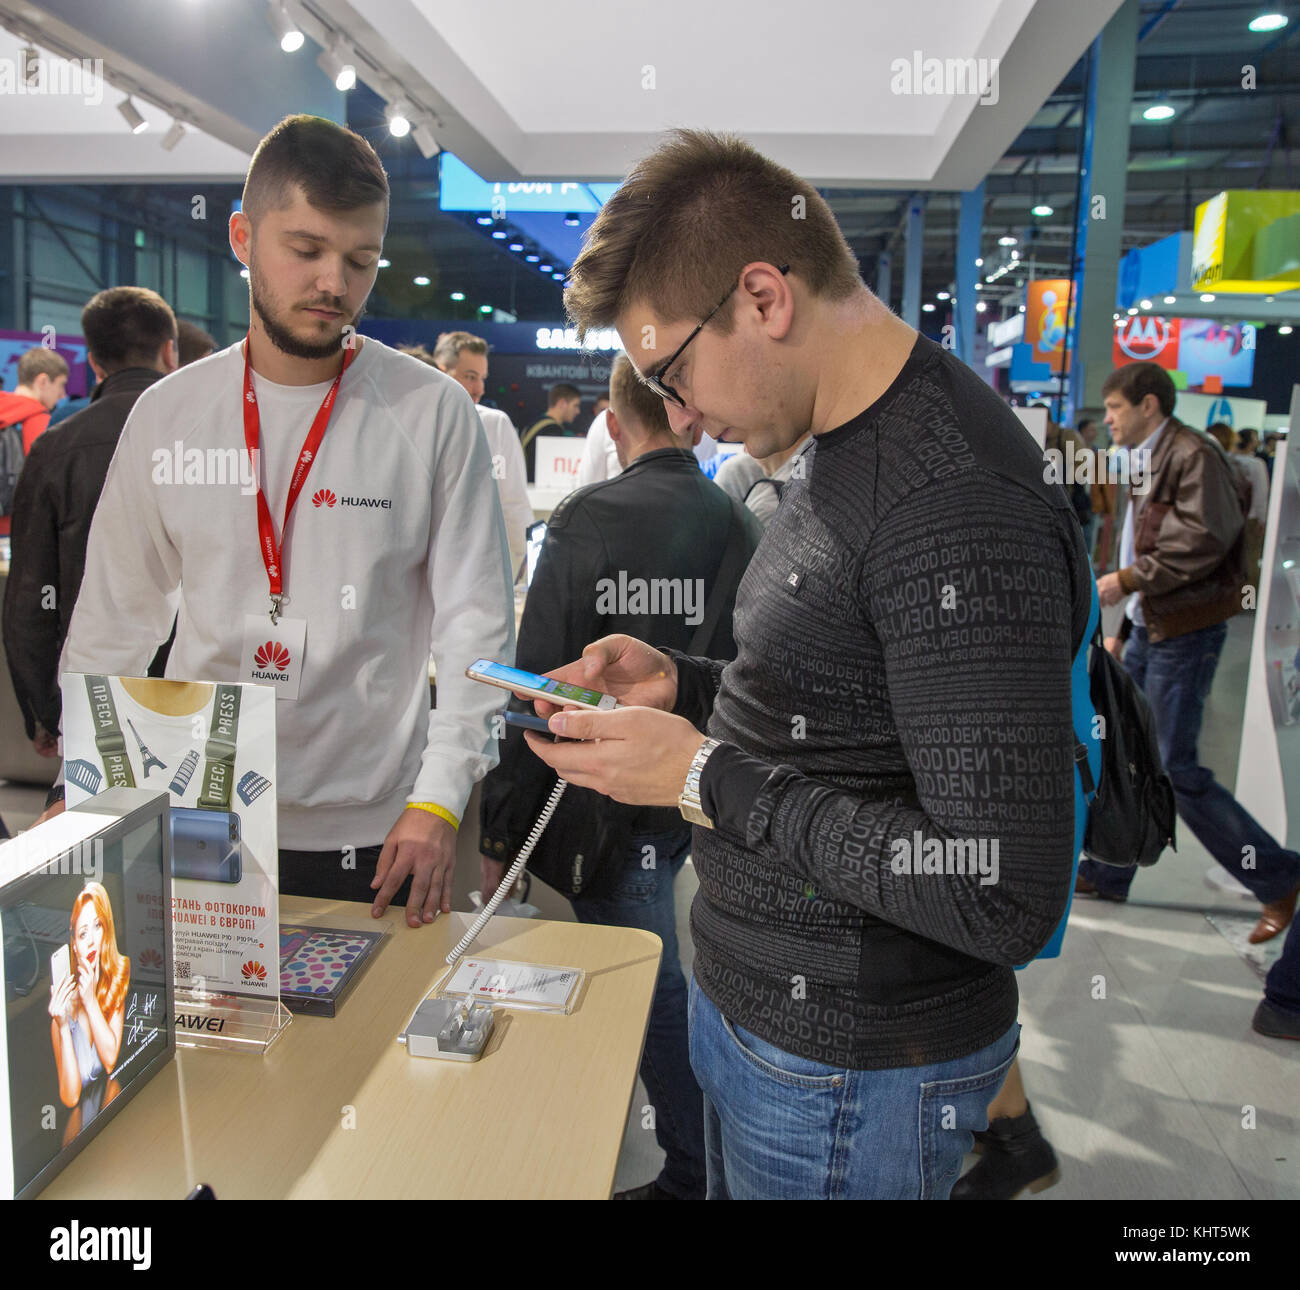 Kiev, Ucraina - 07 ottobre 2017: la gente visita huawei, un sud coreano società multinazionale stand durante la CEE 2017, il più grande commercio di elettronica s Foto Stock